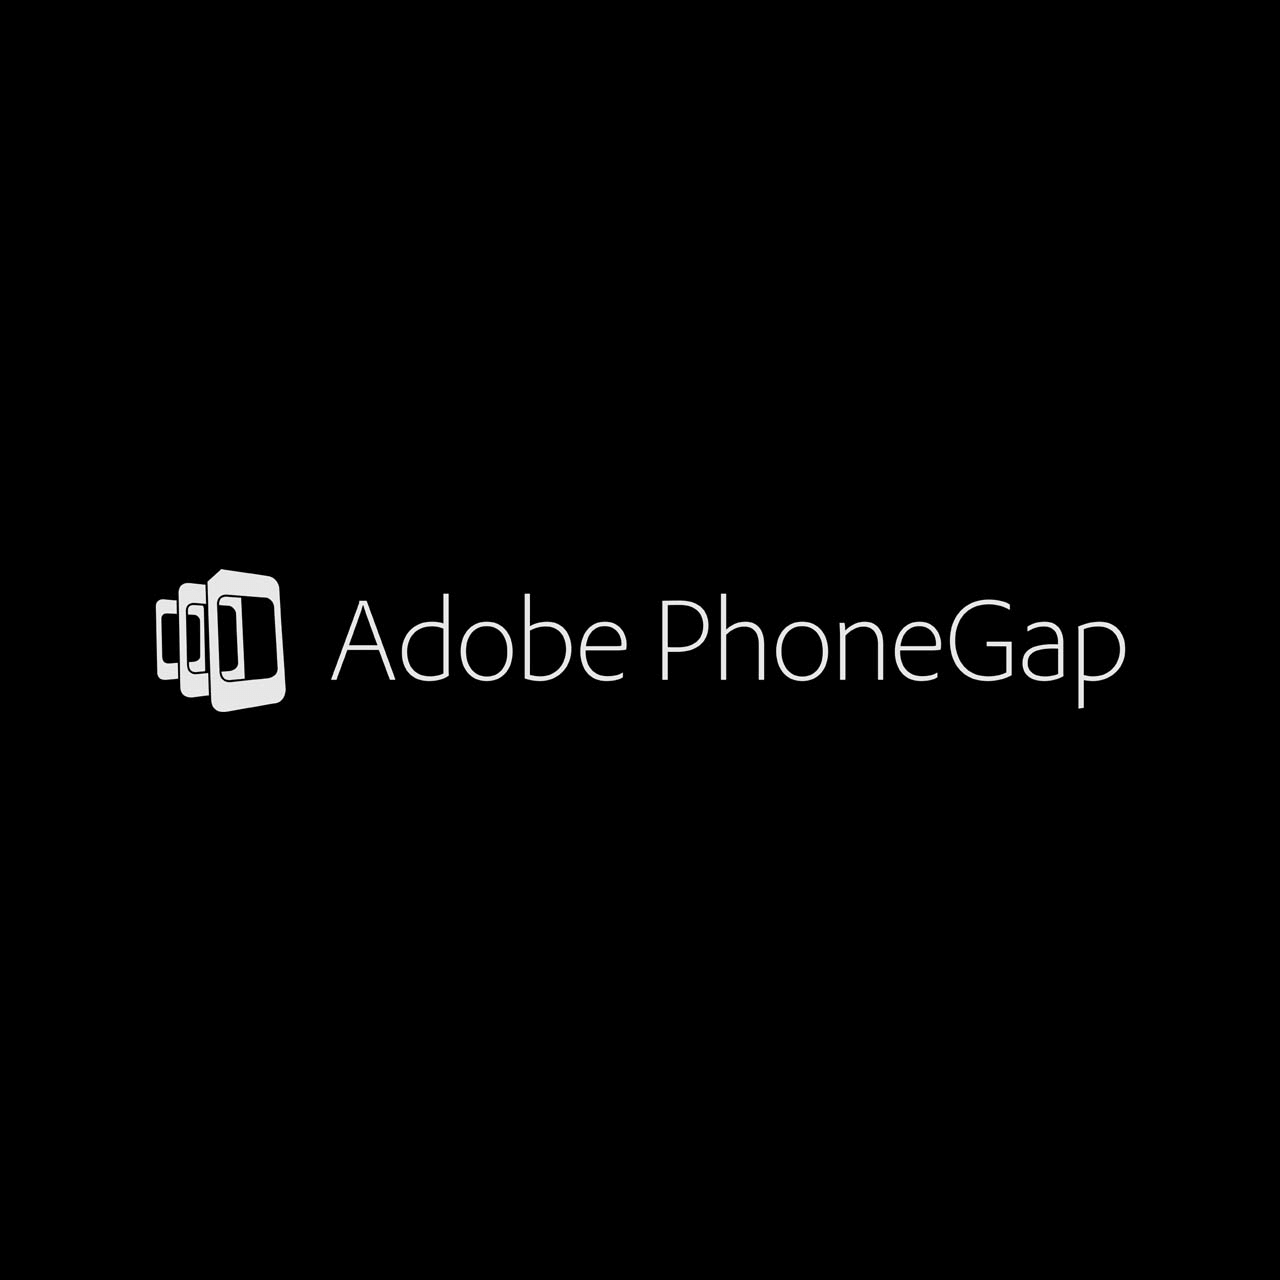 Adobe PhoneGap